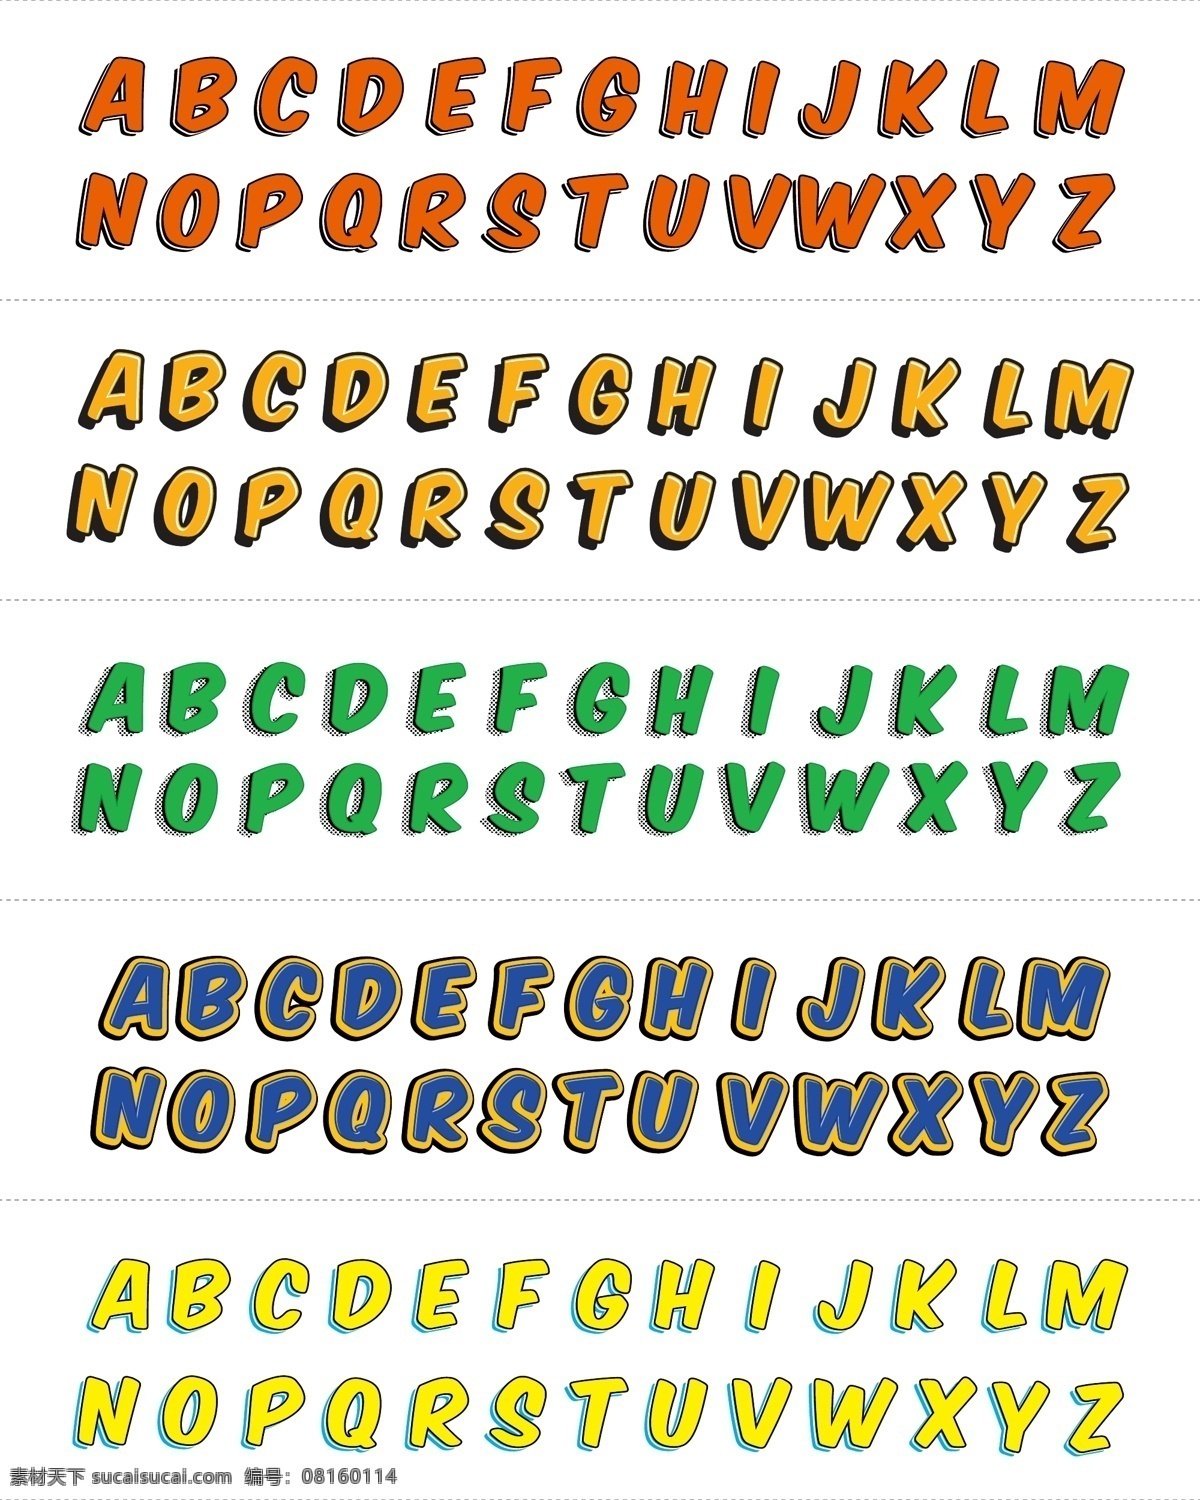 矢量 卡通 彩色 3d 立体 英文 字母 英文字母 矢量字母 卡通字母 彩色字母 时尚字母 现代字母 3d字母 立体字母 艺术字母 可爱字母 喜庆字母 活泼字母 手绘字母 描边字母 红色字母 黄色字母 绿色字母 大写字母 数字字母 文化艺术 绘画书法